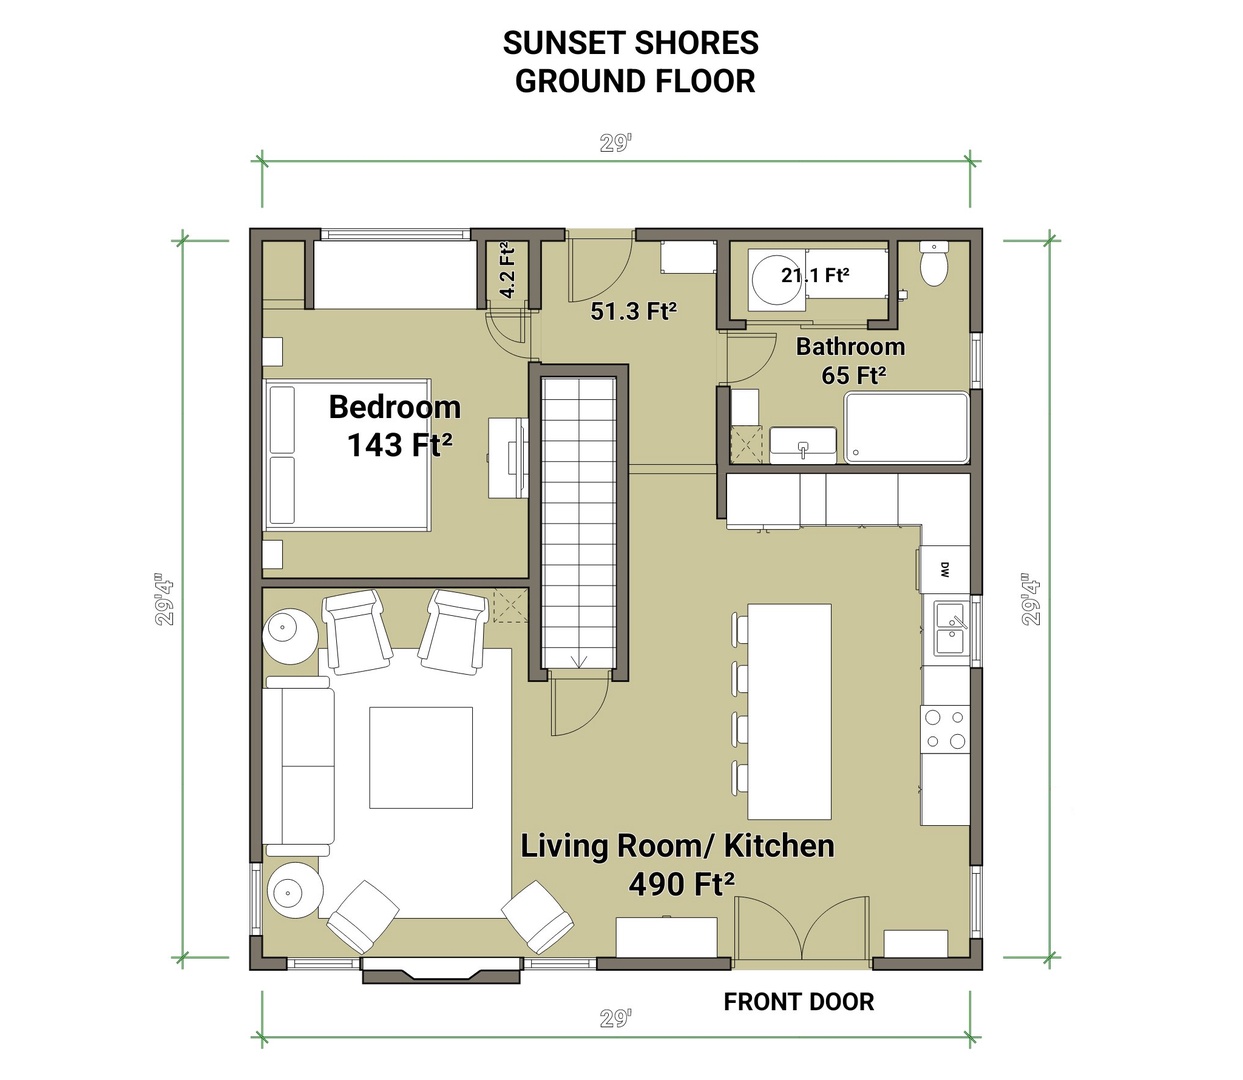 Sunset Shores Cottage Ground Floor Floorplan